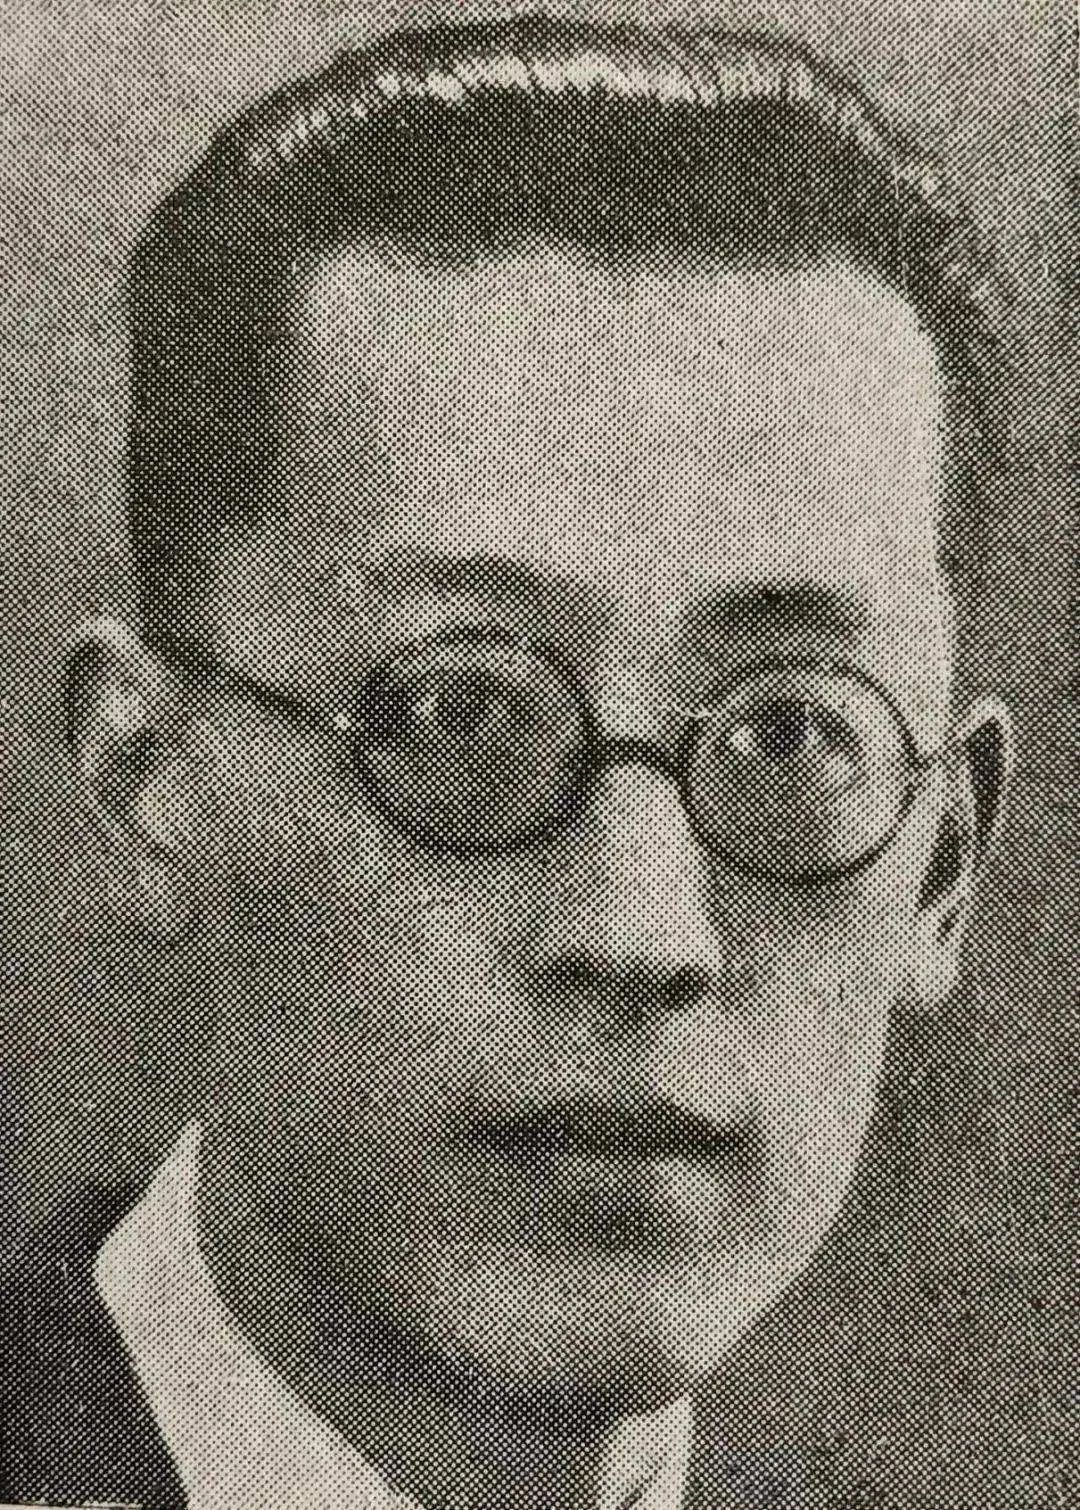 吴景超（1901-1968），著有《都市社会学》《社会的生物基础》《第四种国家的出路》等。